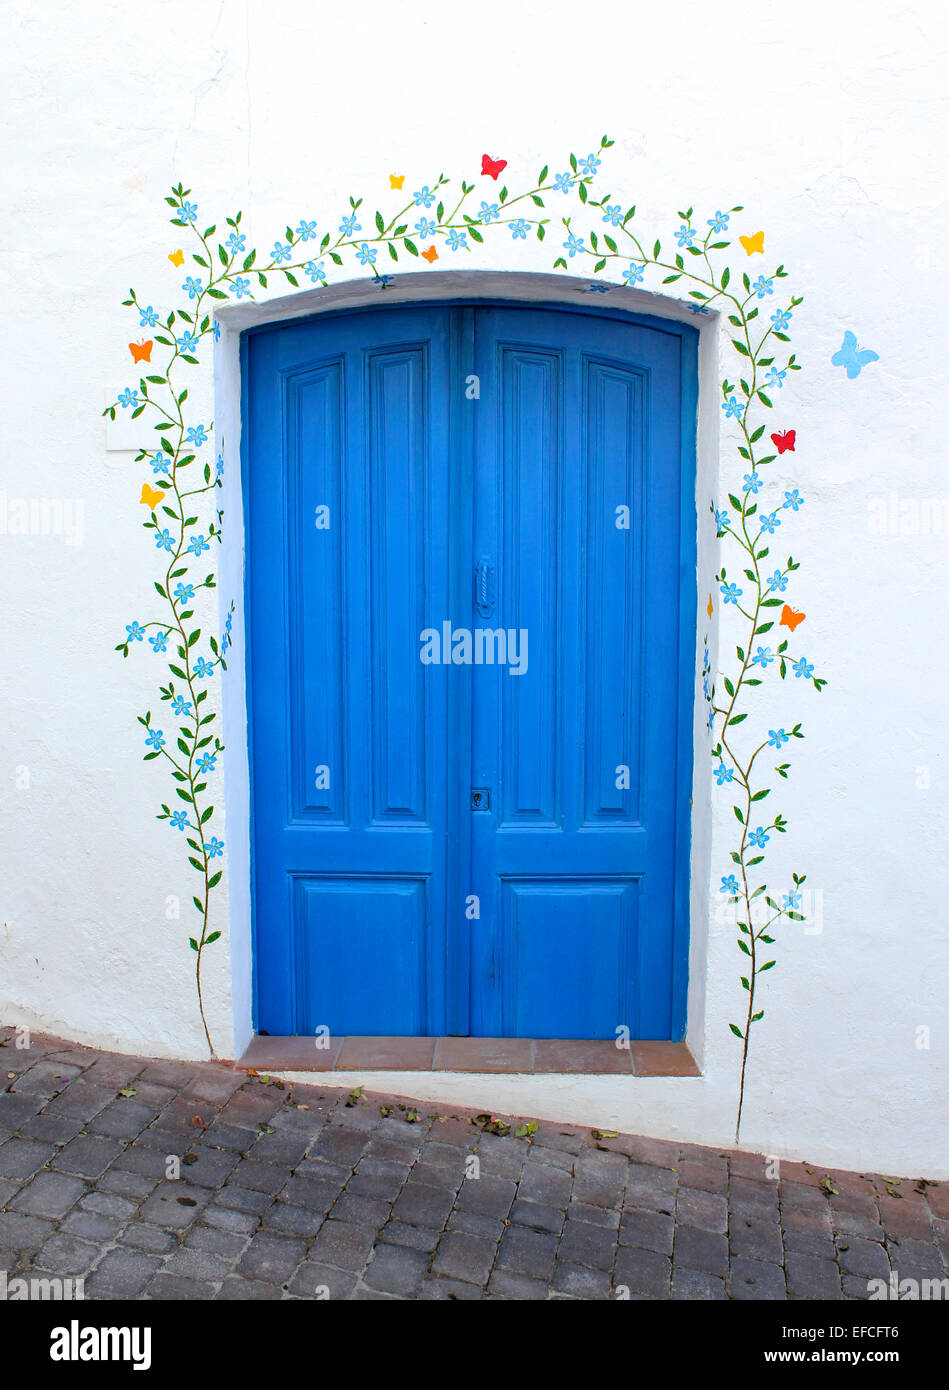 Une porte bleu peint de couleurs vives, décoré de la murale d'un trailing plantes et fleurs sur un mur blanchi à la chaux Banque D'Images